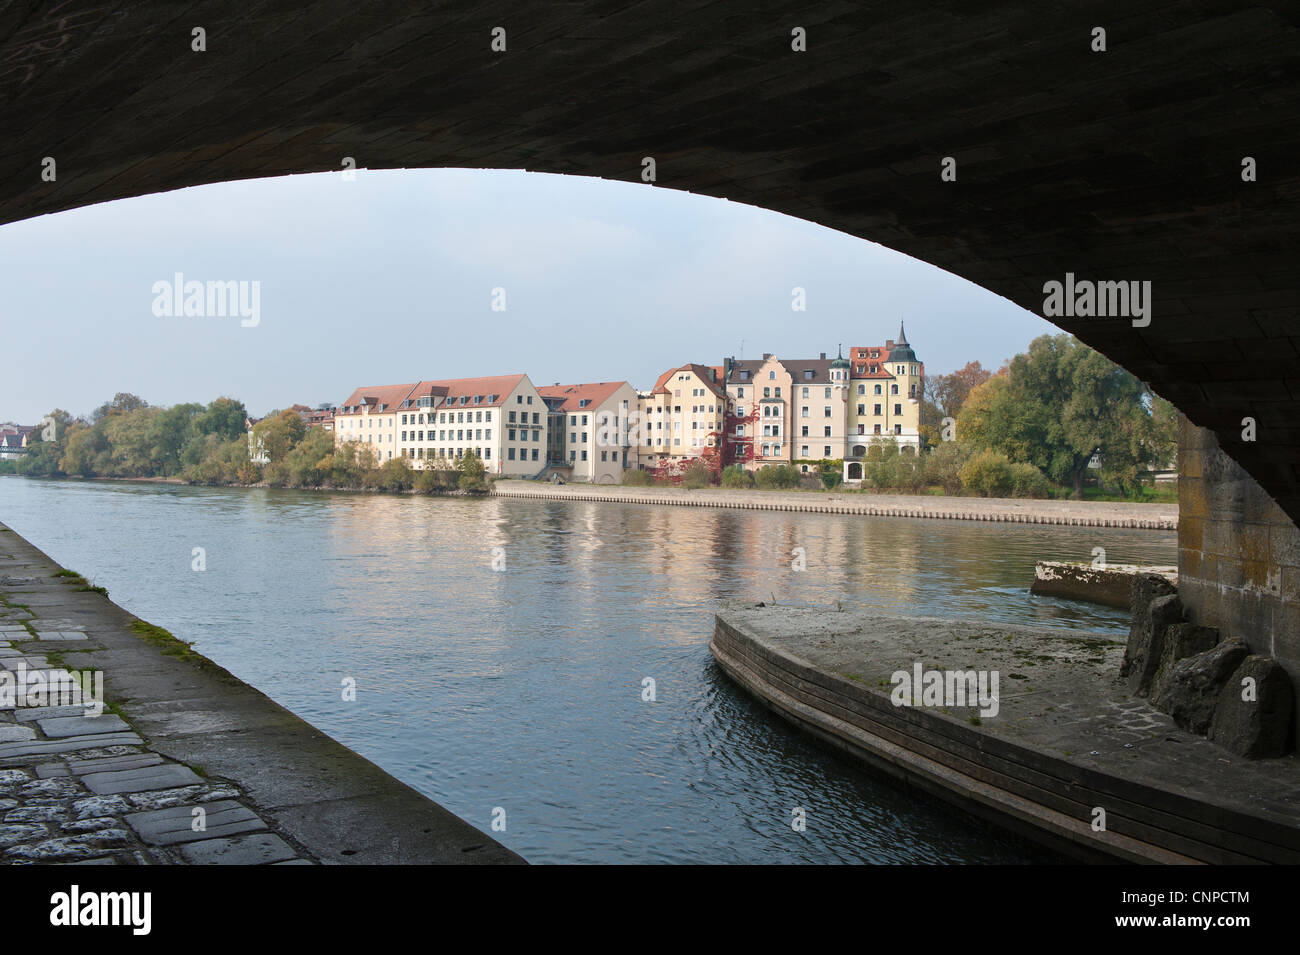 Storica romana Steinerne Brücke (ponte) sopra il Danubio, Regensburg, Germania. Foto Stock